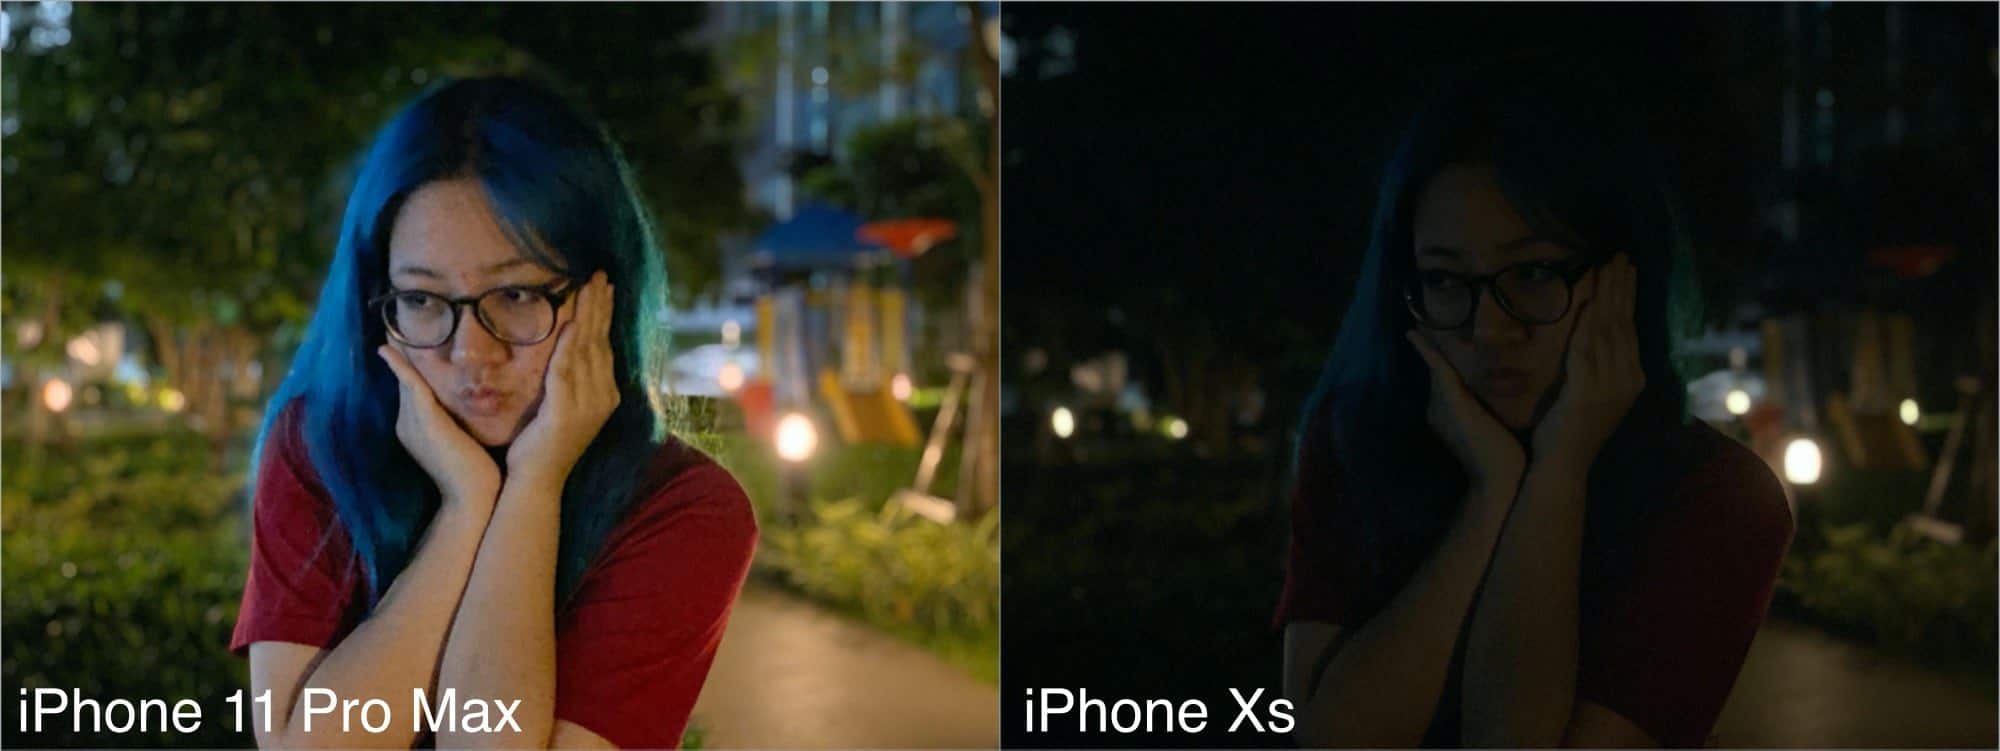 รีวิว iPhone 11 Pro Max รุ่นกู้ศรัทธาสาวก ถูกลงและดีขึ้น 44